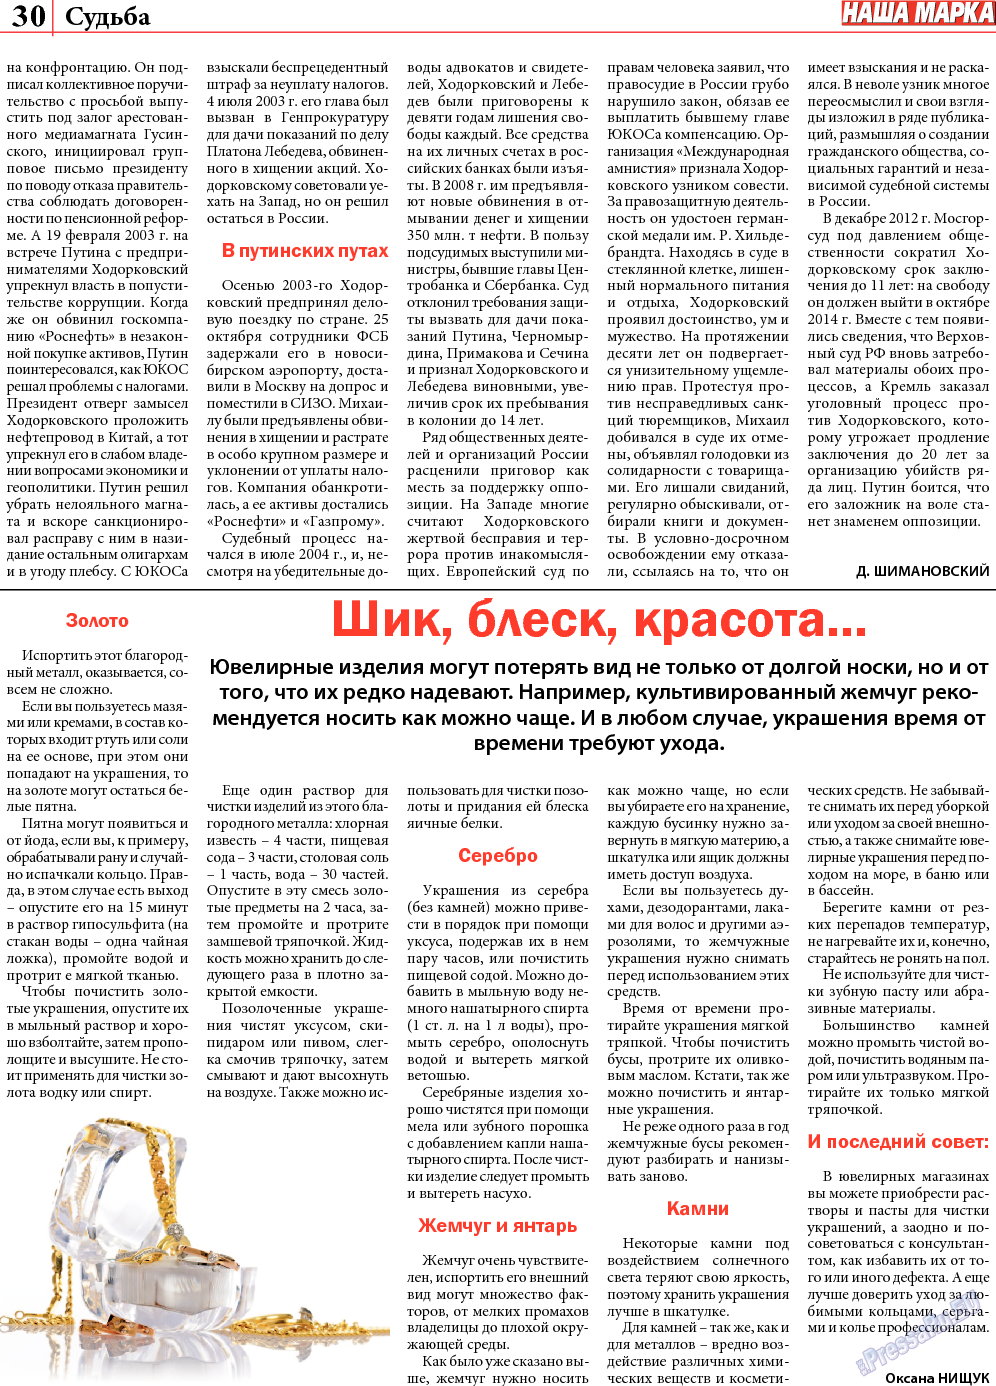 Наша марка (газета). 2013 год, номер 8, стр. 30